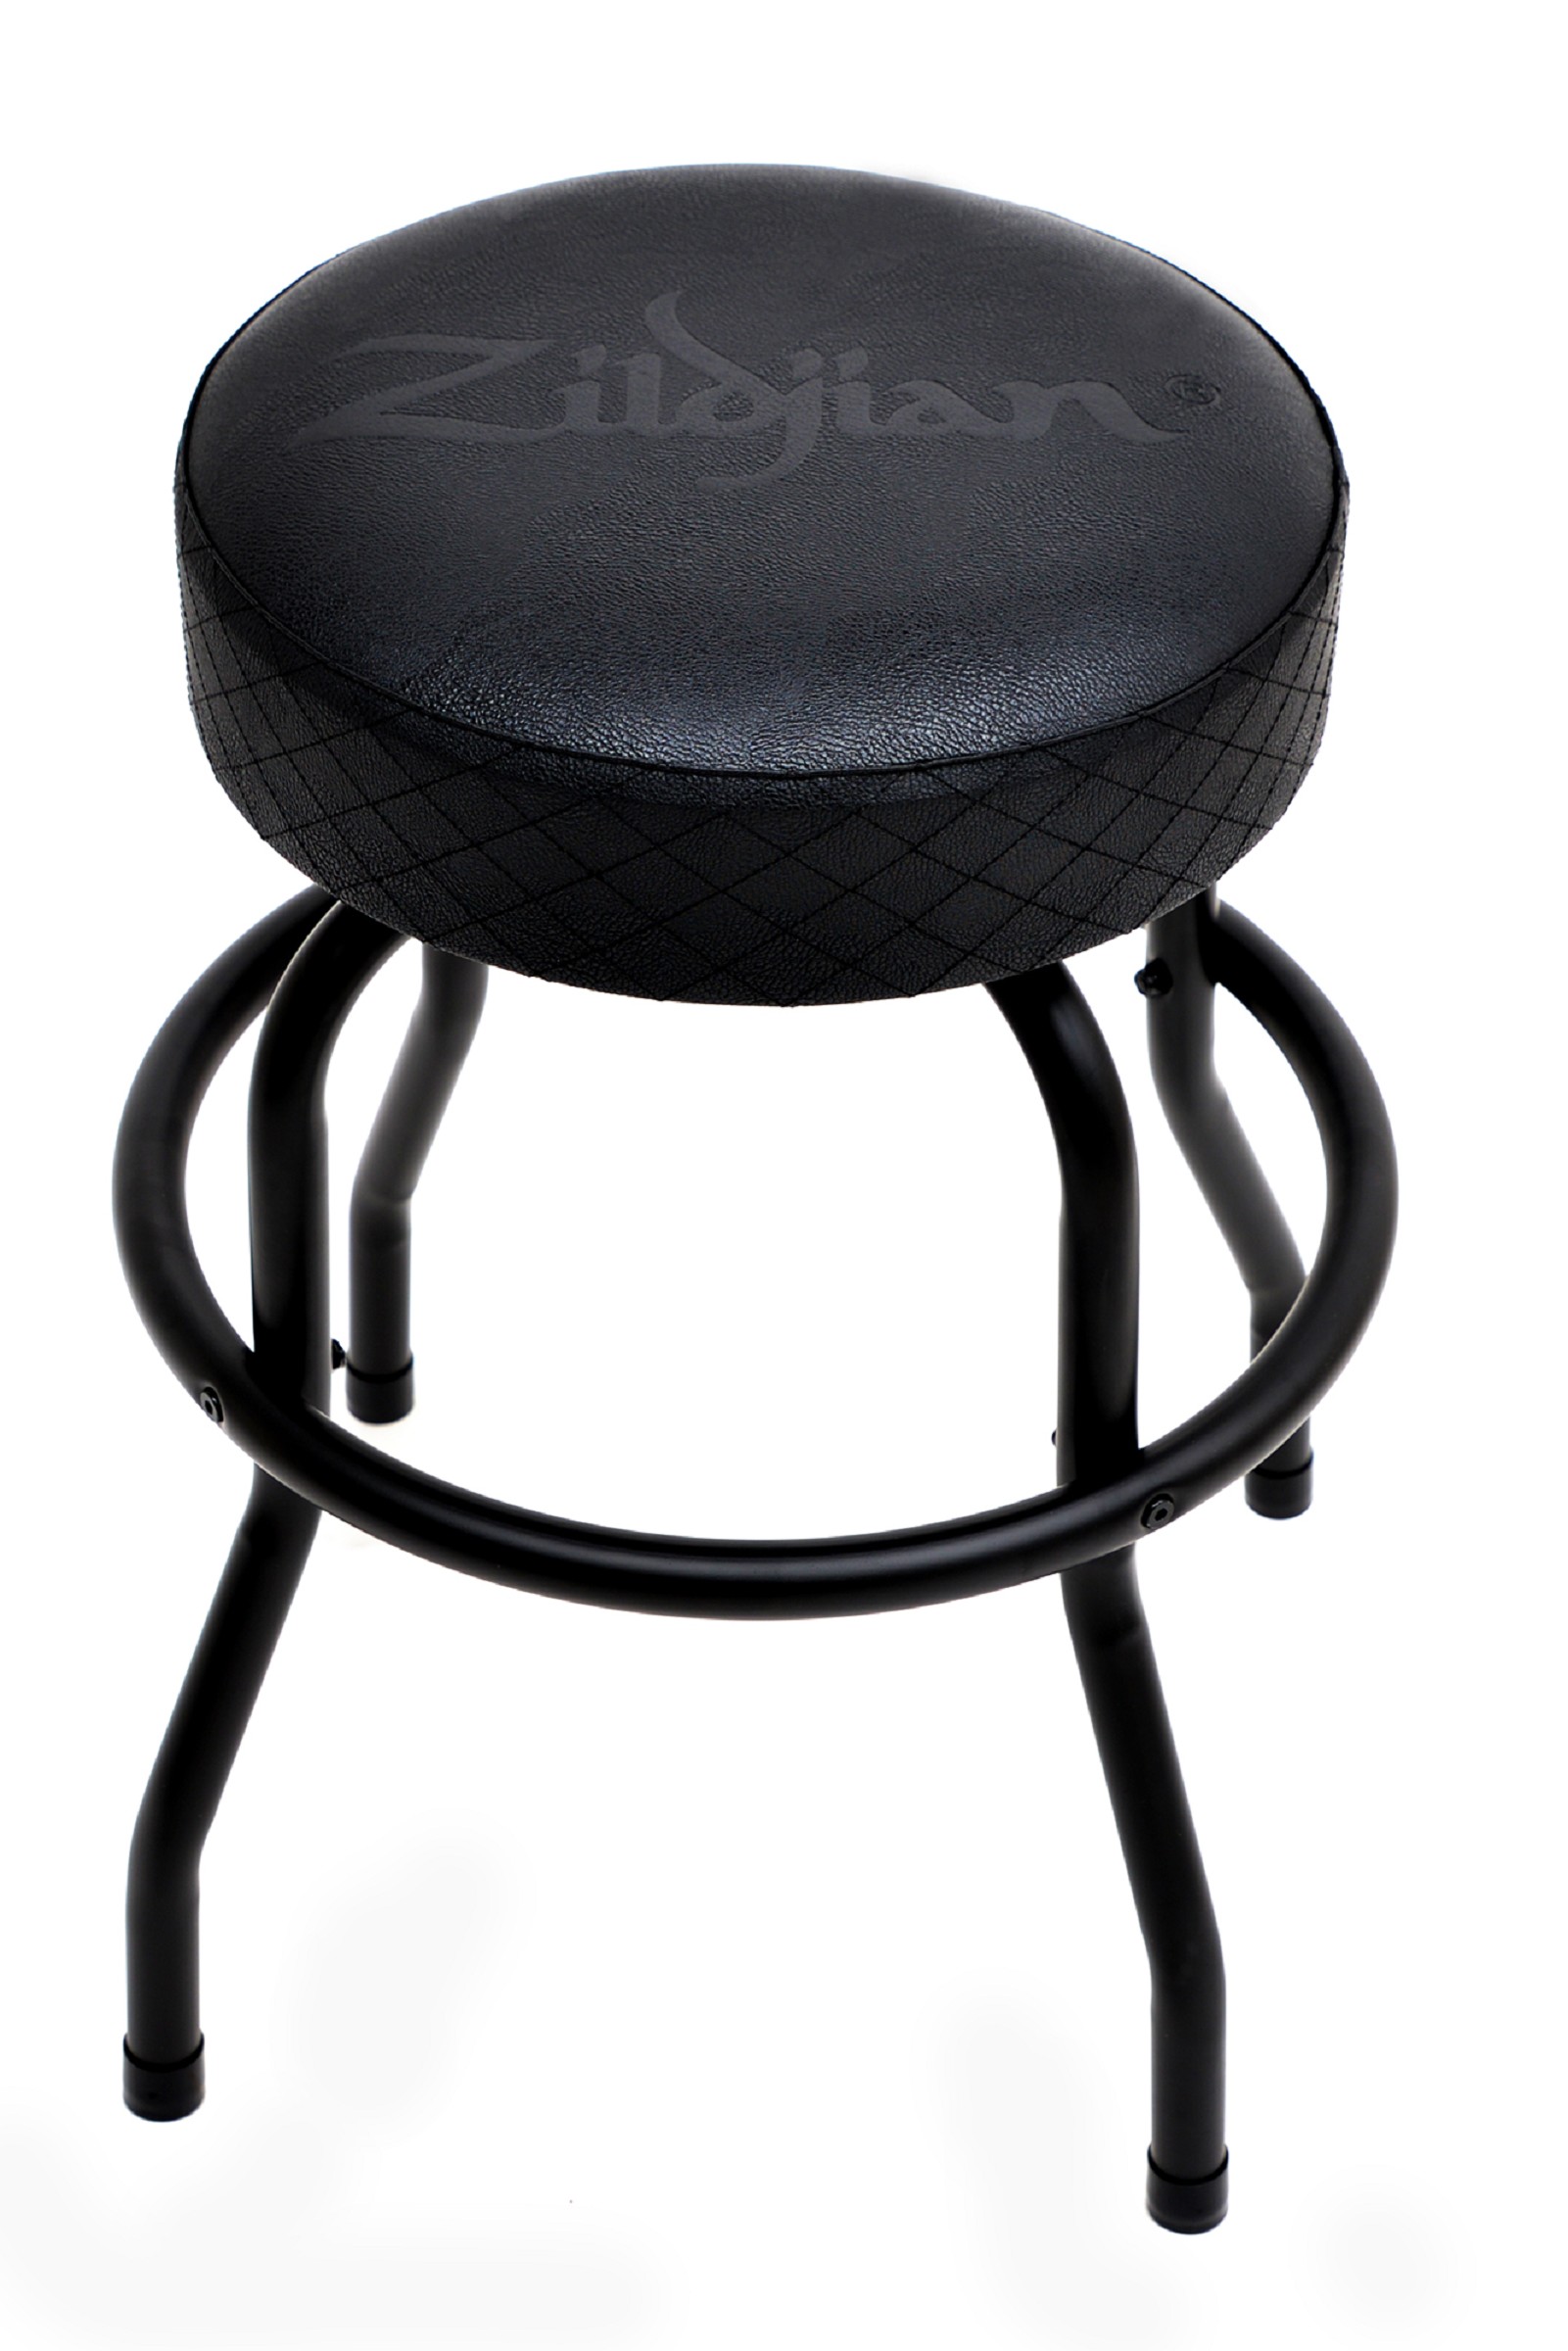 Zildjian Barstool 30" Barhocker schwarz mit grauem Logo